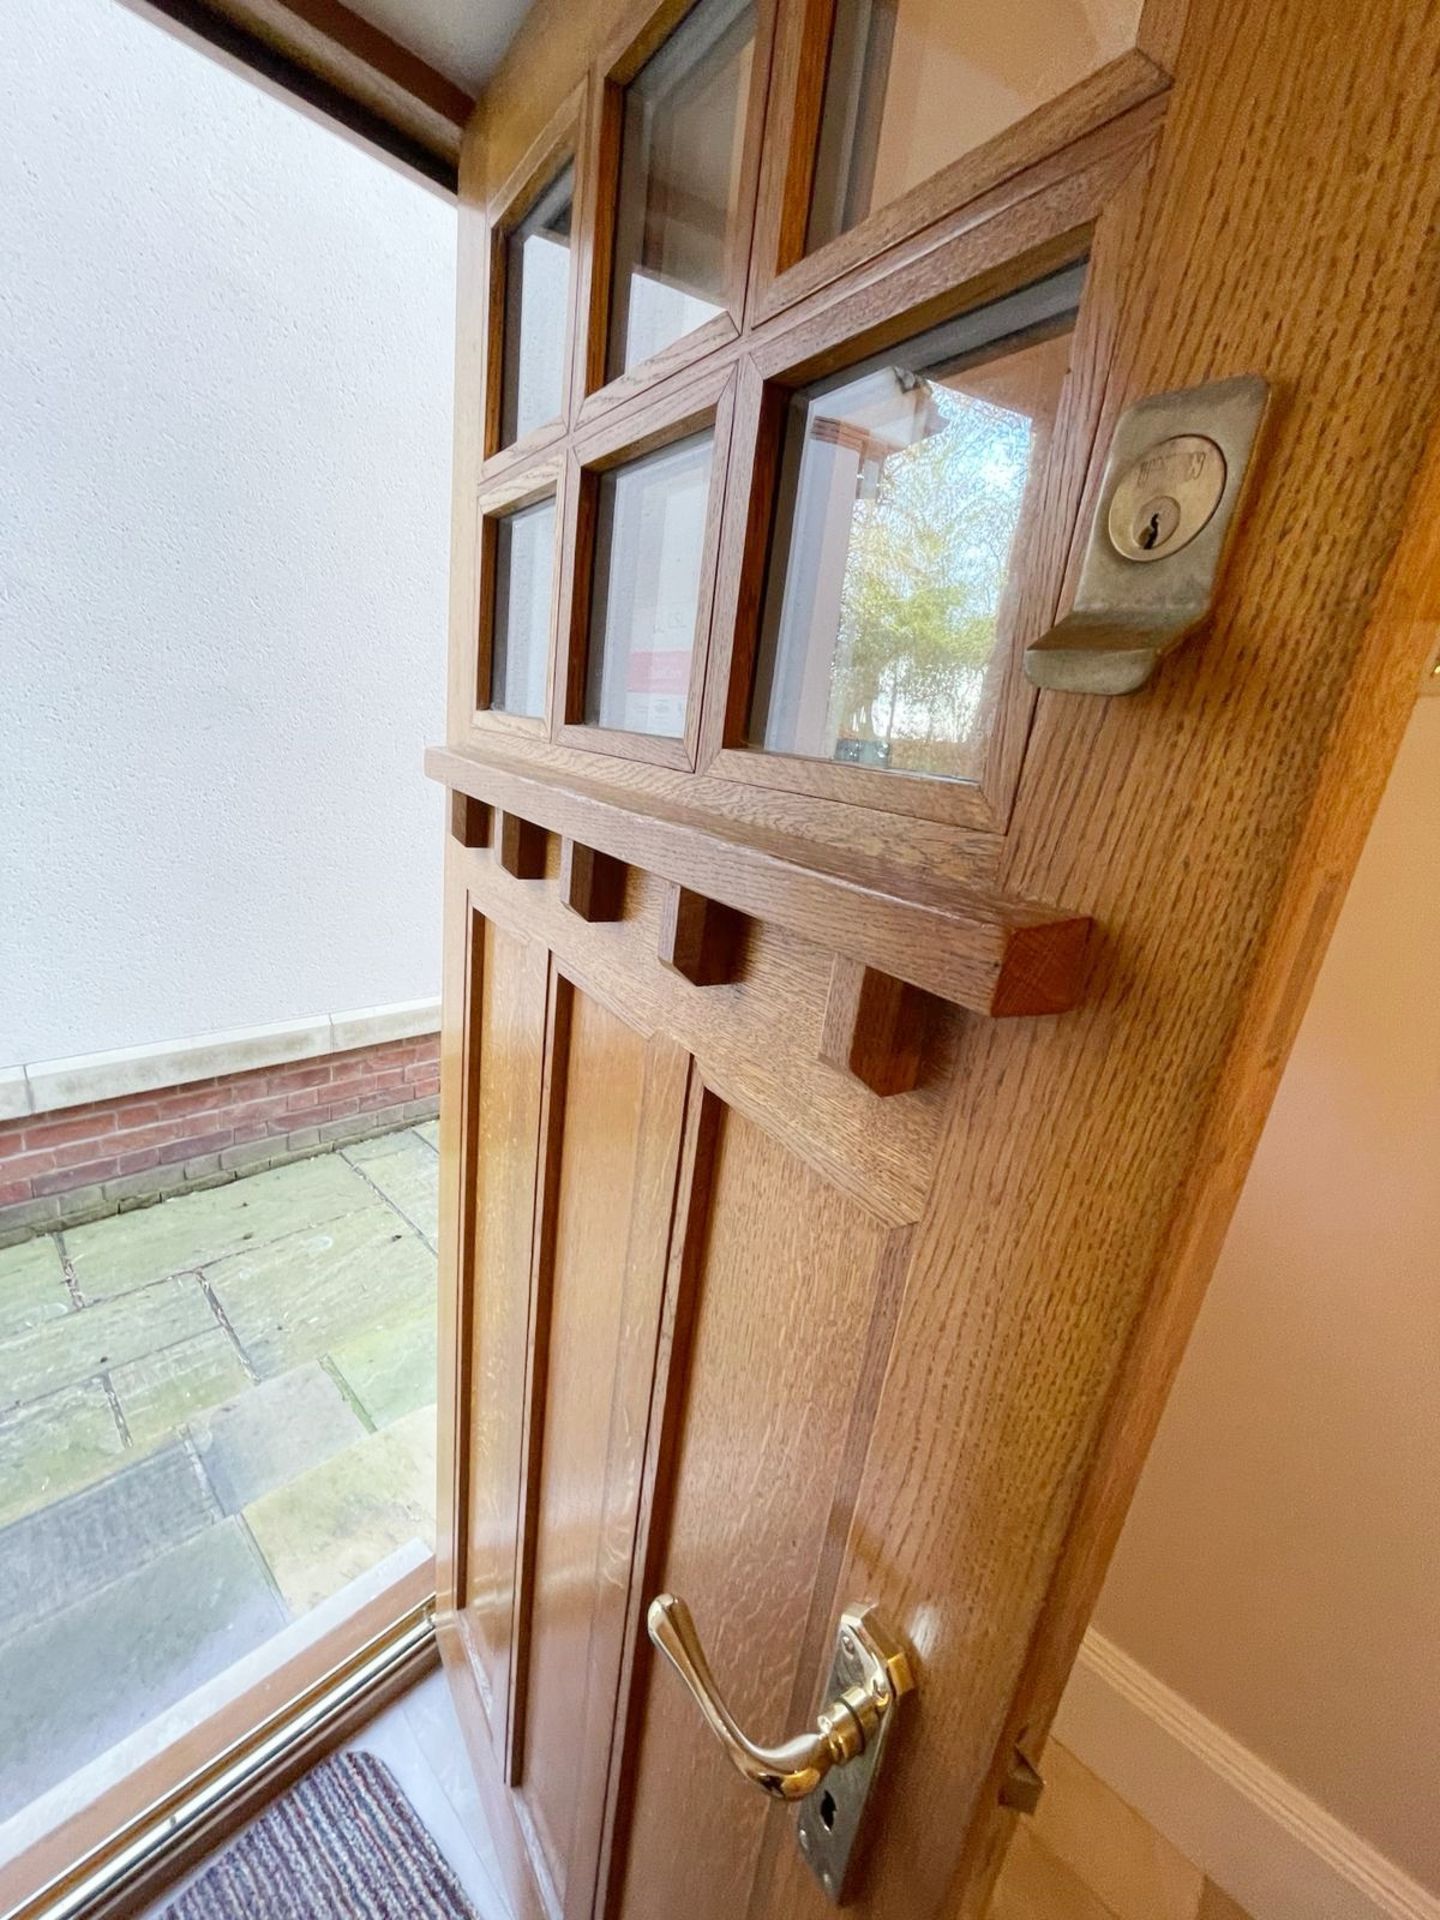 1 x Solid Wood Lockable Glazed External Side Door - Includes Hinges & Handles - Ref: PAN141 - NO VAT - Image 11 of 17